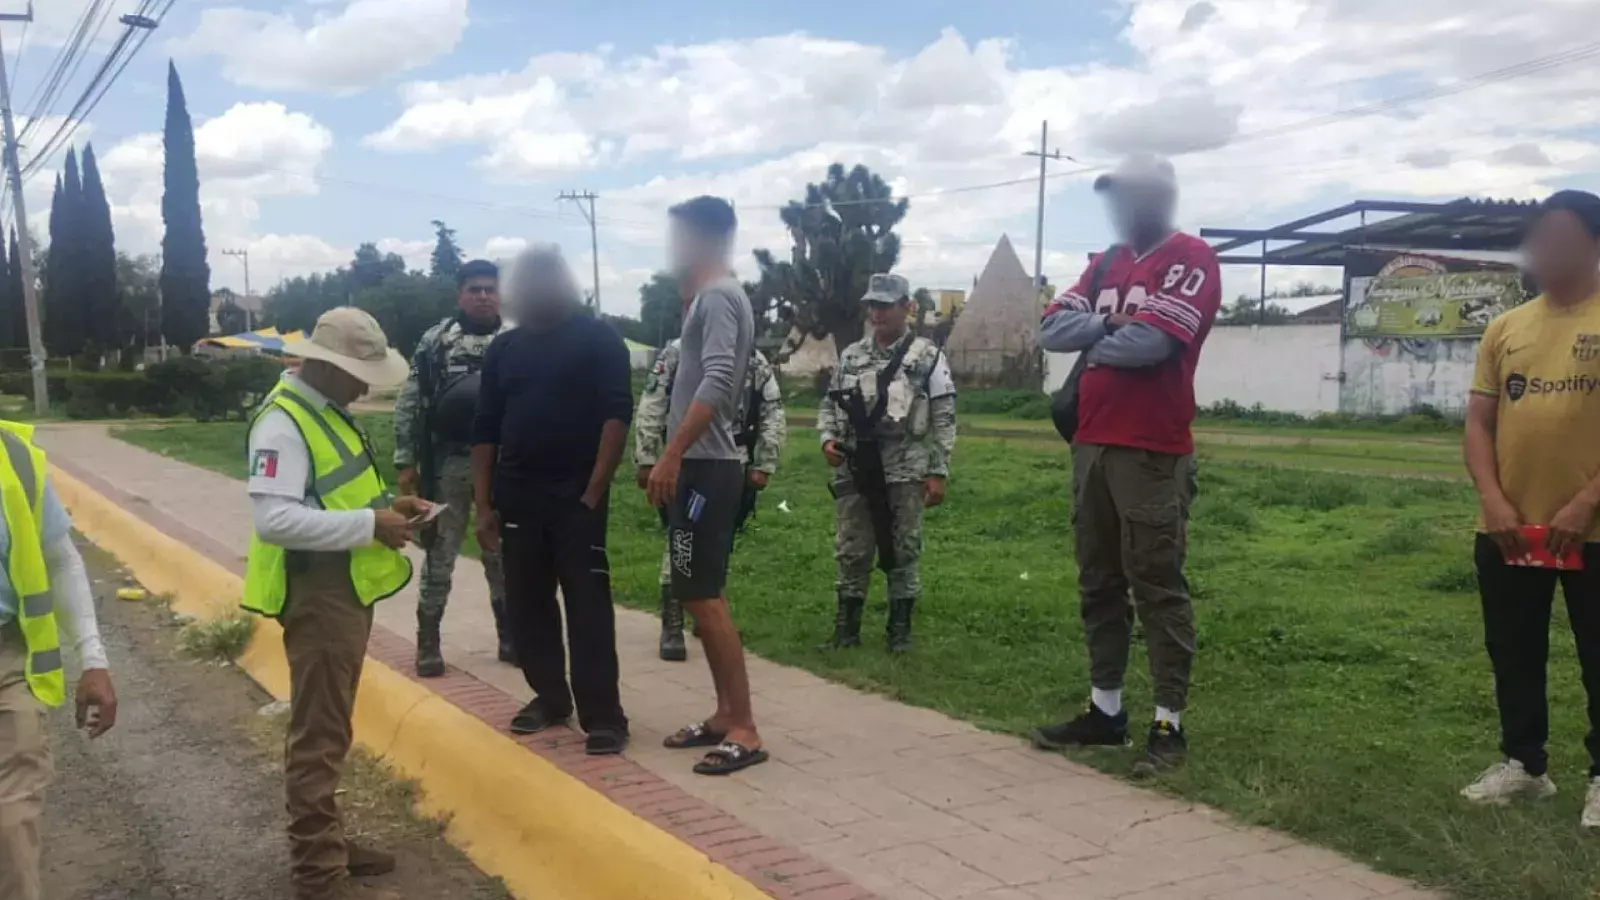 Migrantes detenidos en Hidalgo